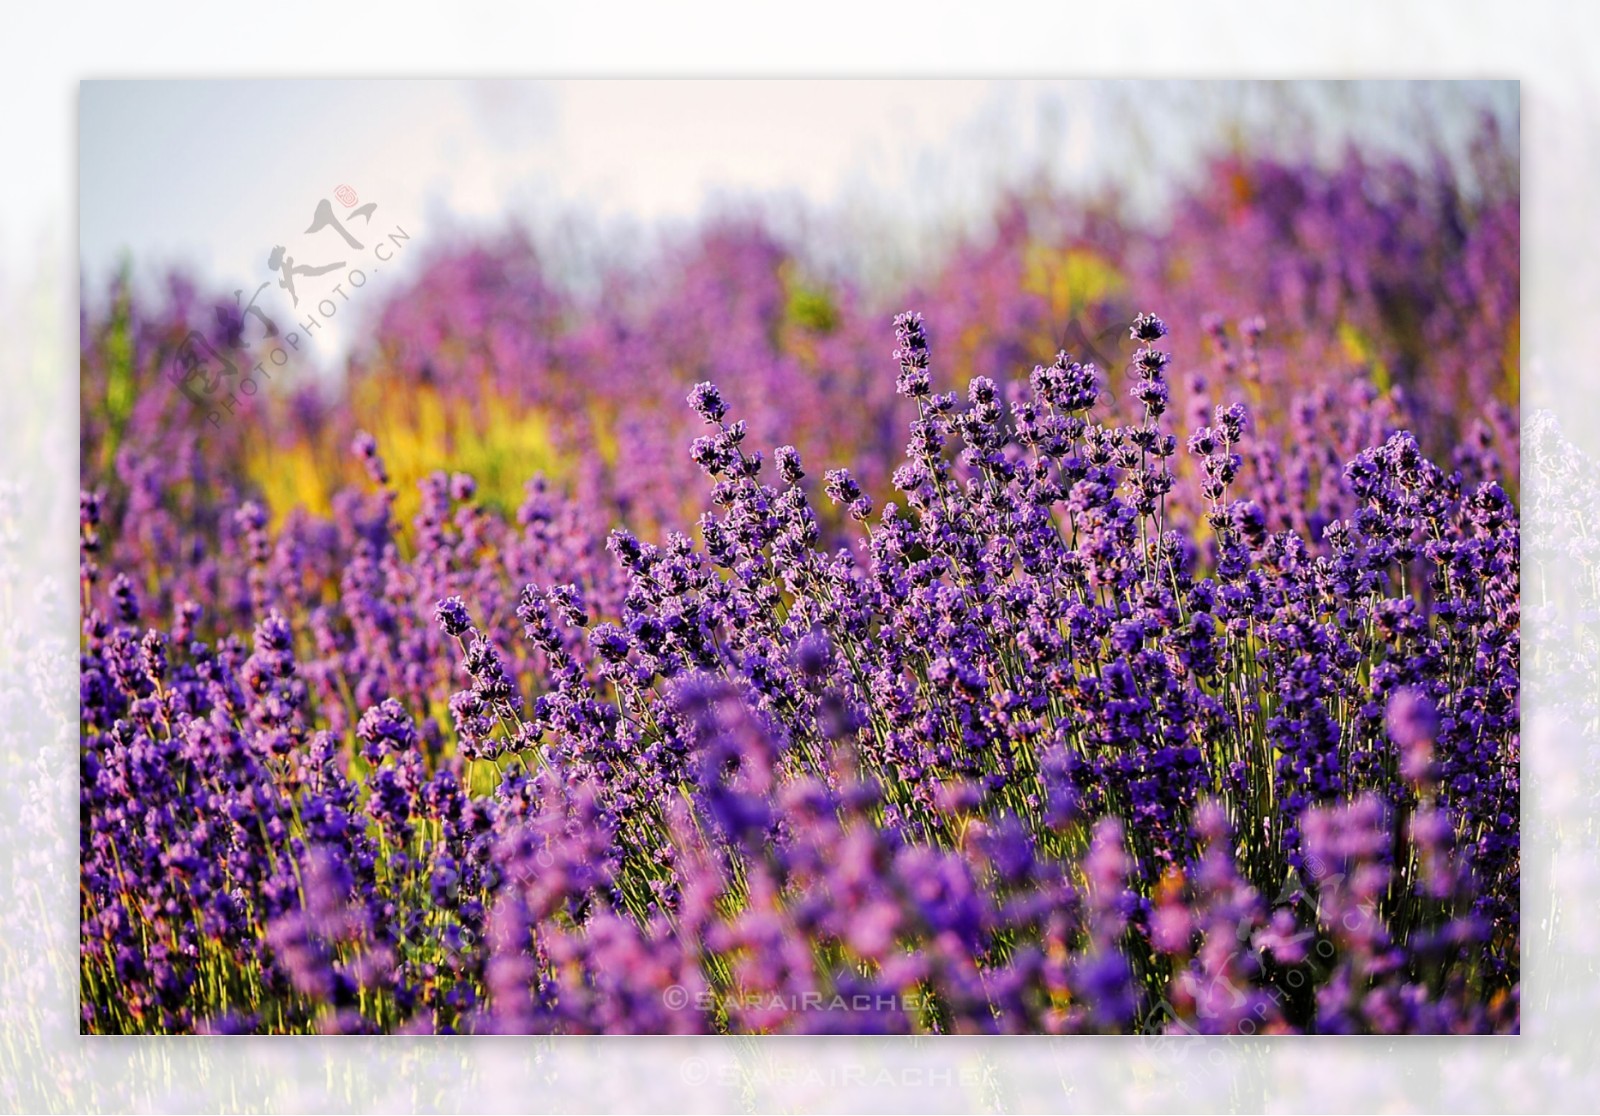 薰衣草紫色花卉图片